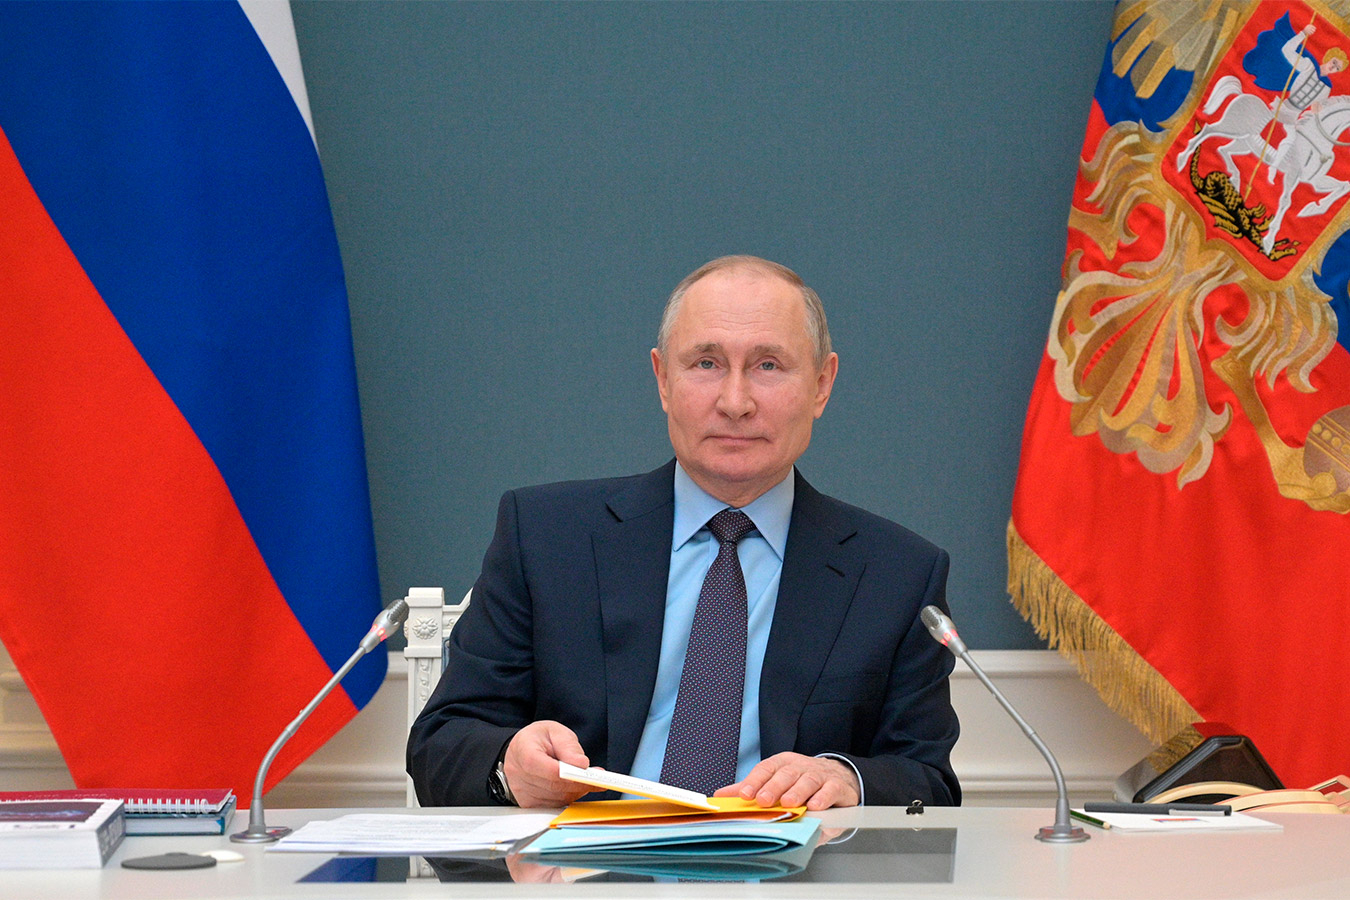 Фигу: Путин — сильный человек. Иначе он не управлял бы Россией столько лет